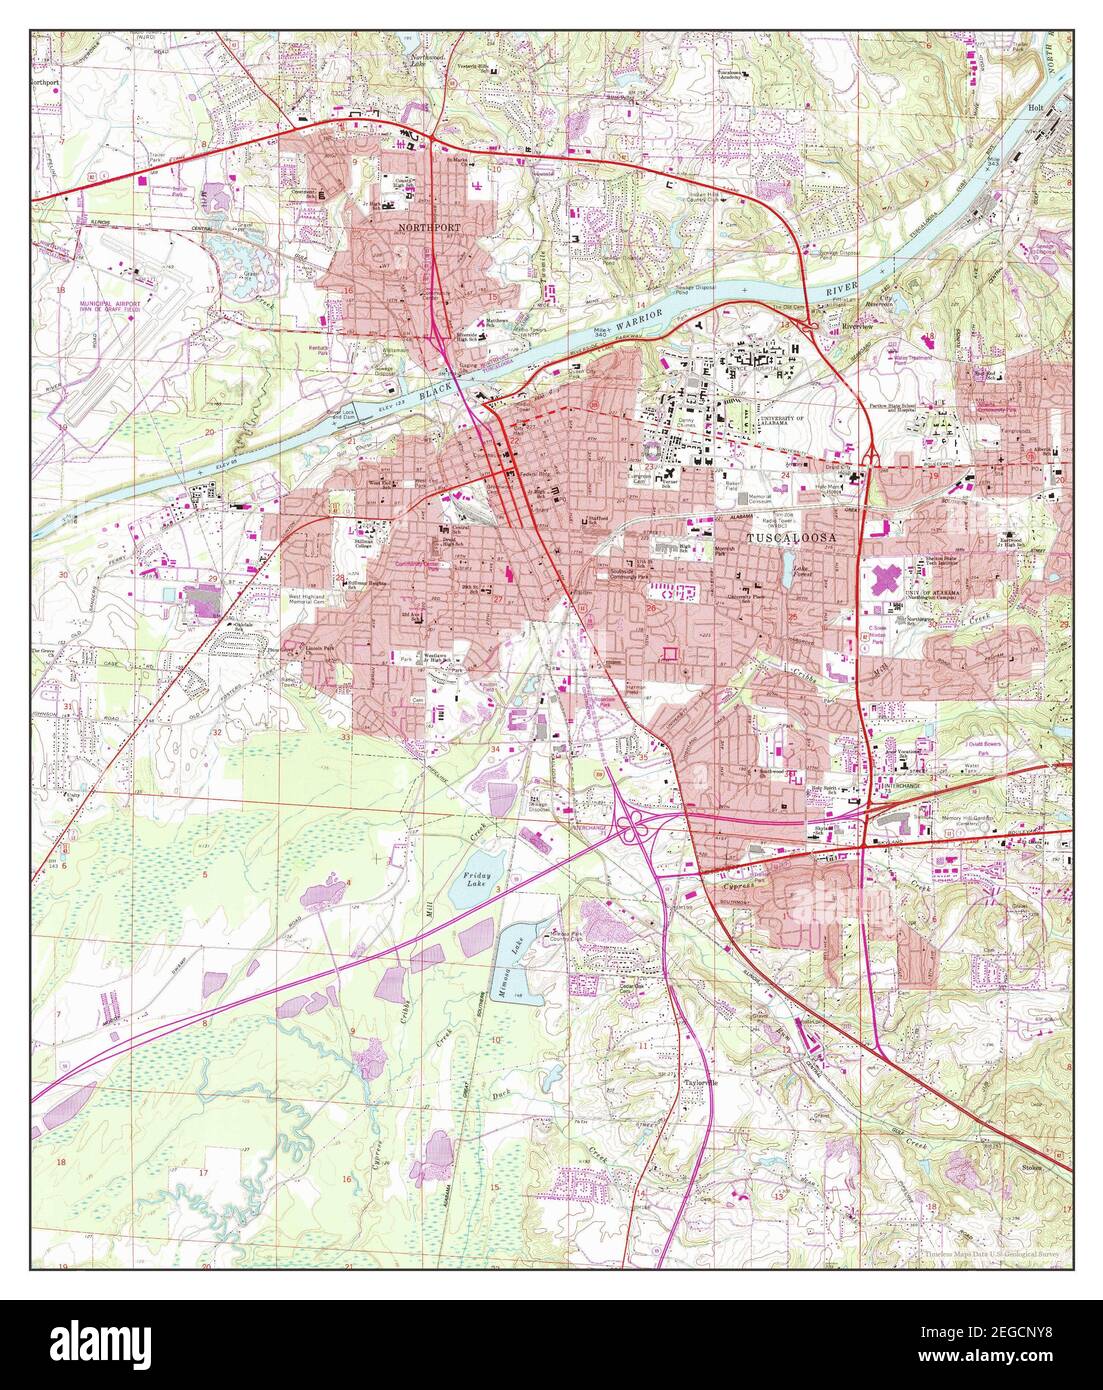 Tuscaloosa, Alabama, Karte 1971, 1:24000, Vereinigte Staaten von Amerika von Timeless Maps, Daten U.S. Geological Survey Stockfoto